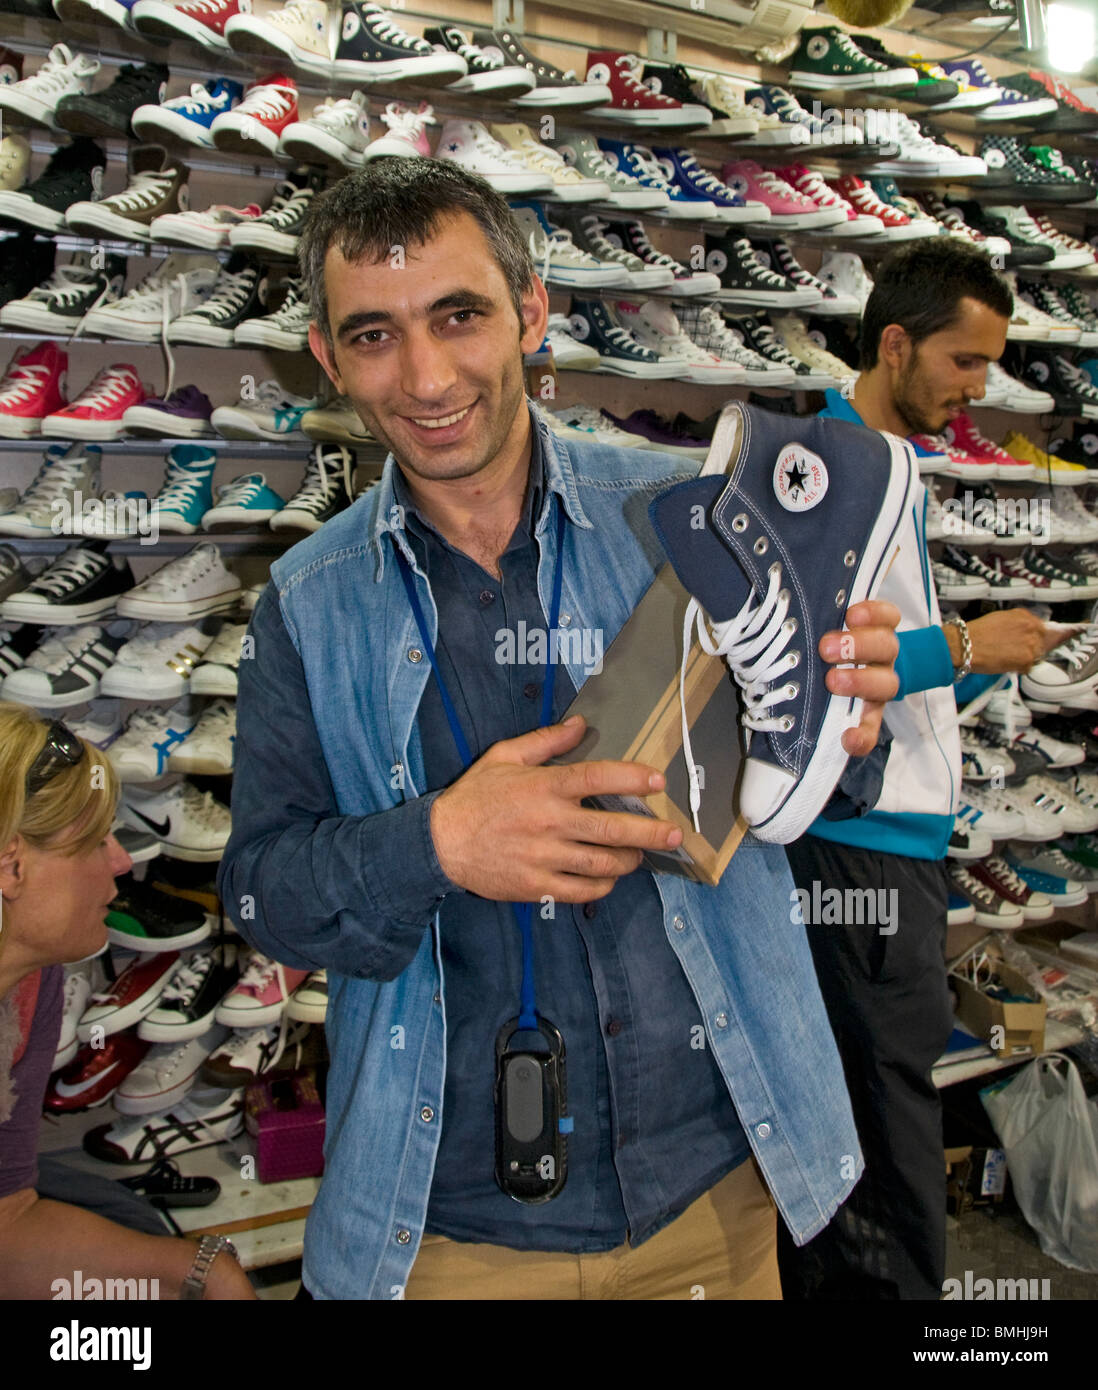 El Gran Bazar de Estambul Turquía Kapali Carsi Kapalıcarsı zapatos zapatería clandestino ilegal All Stars Foto de stock